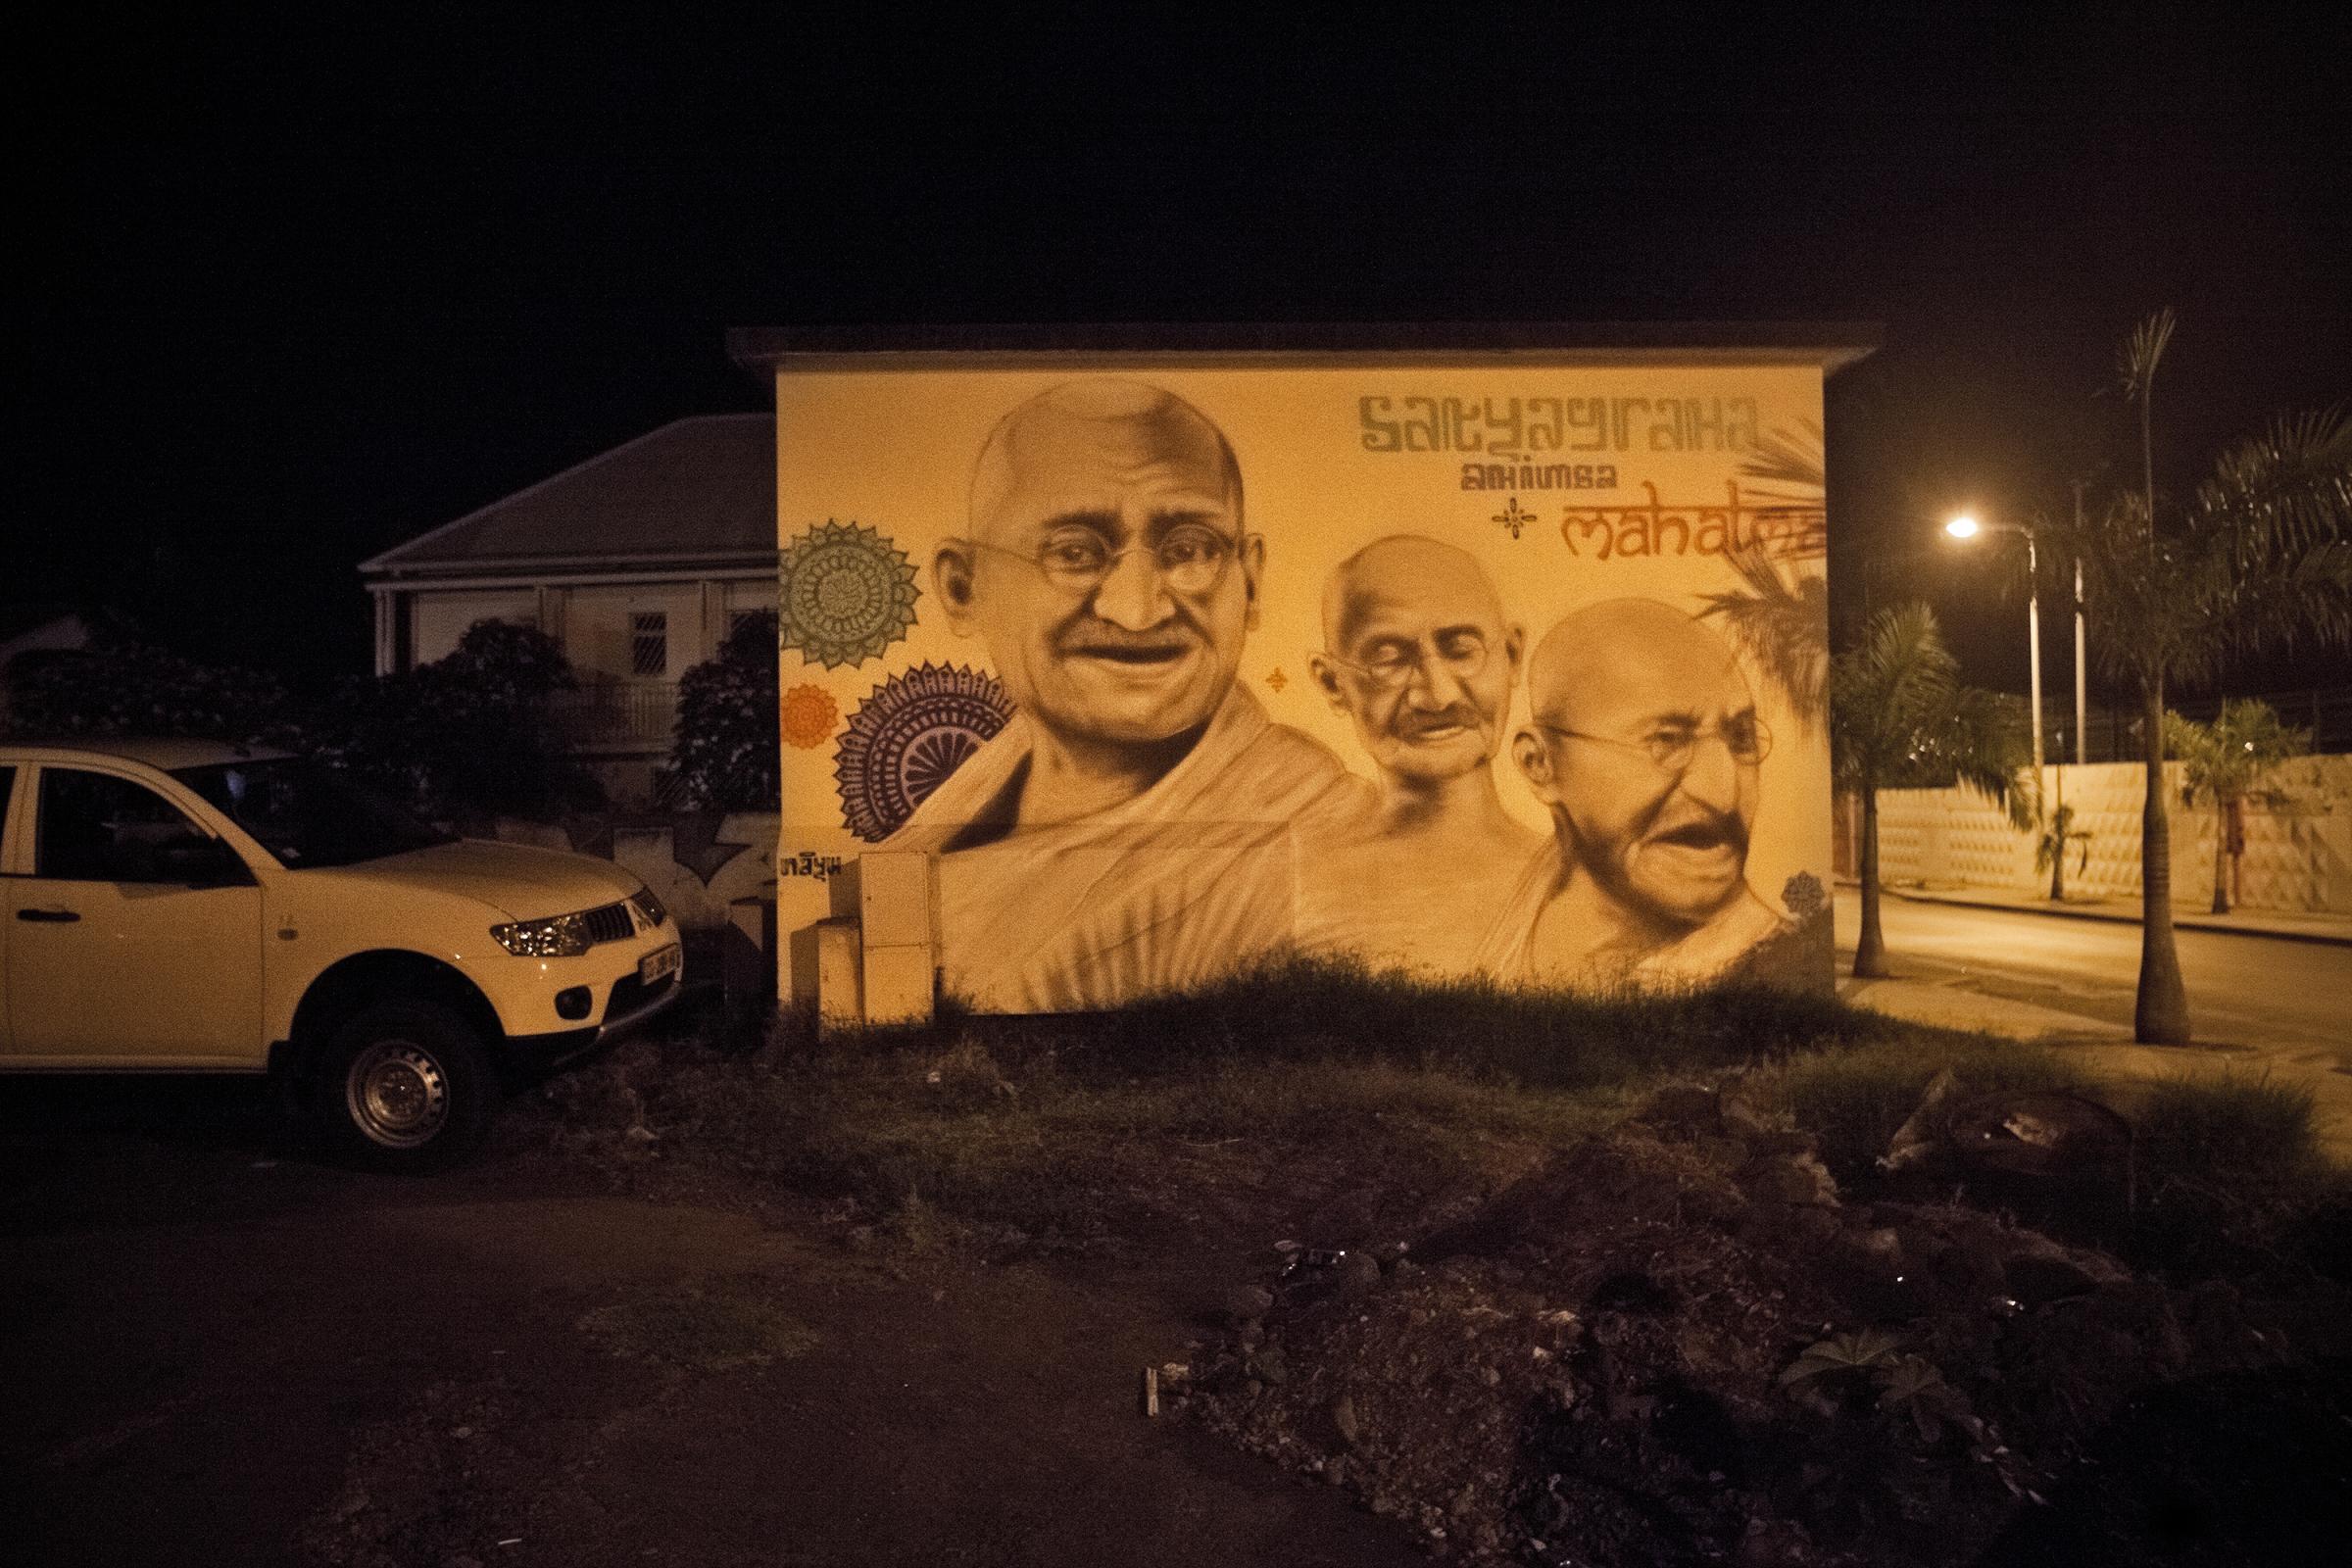 • De l'Inde à La Réunion, de l'Engagisme à la liberté - Graffiti en hommage à Gandhi, Saint-Louis....